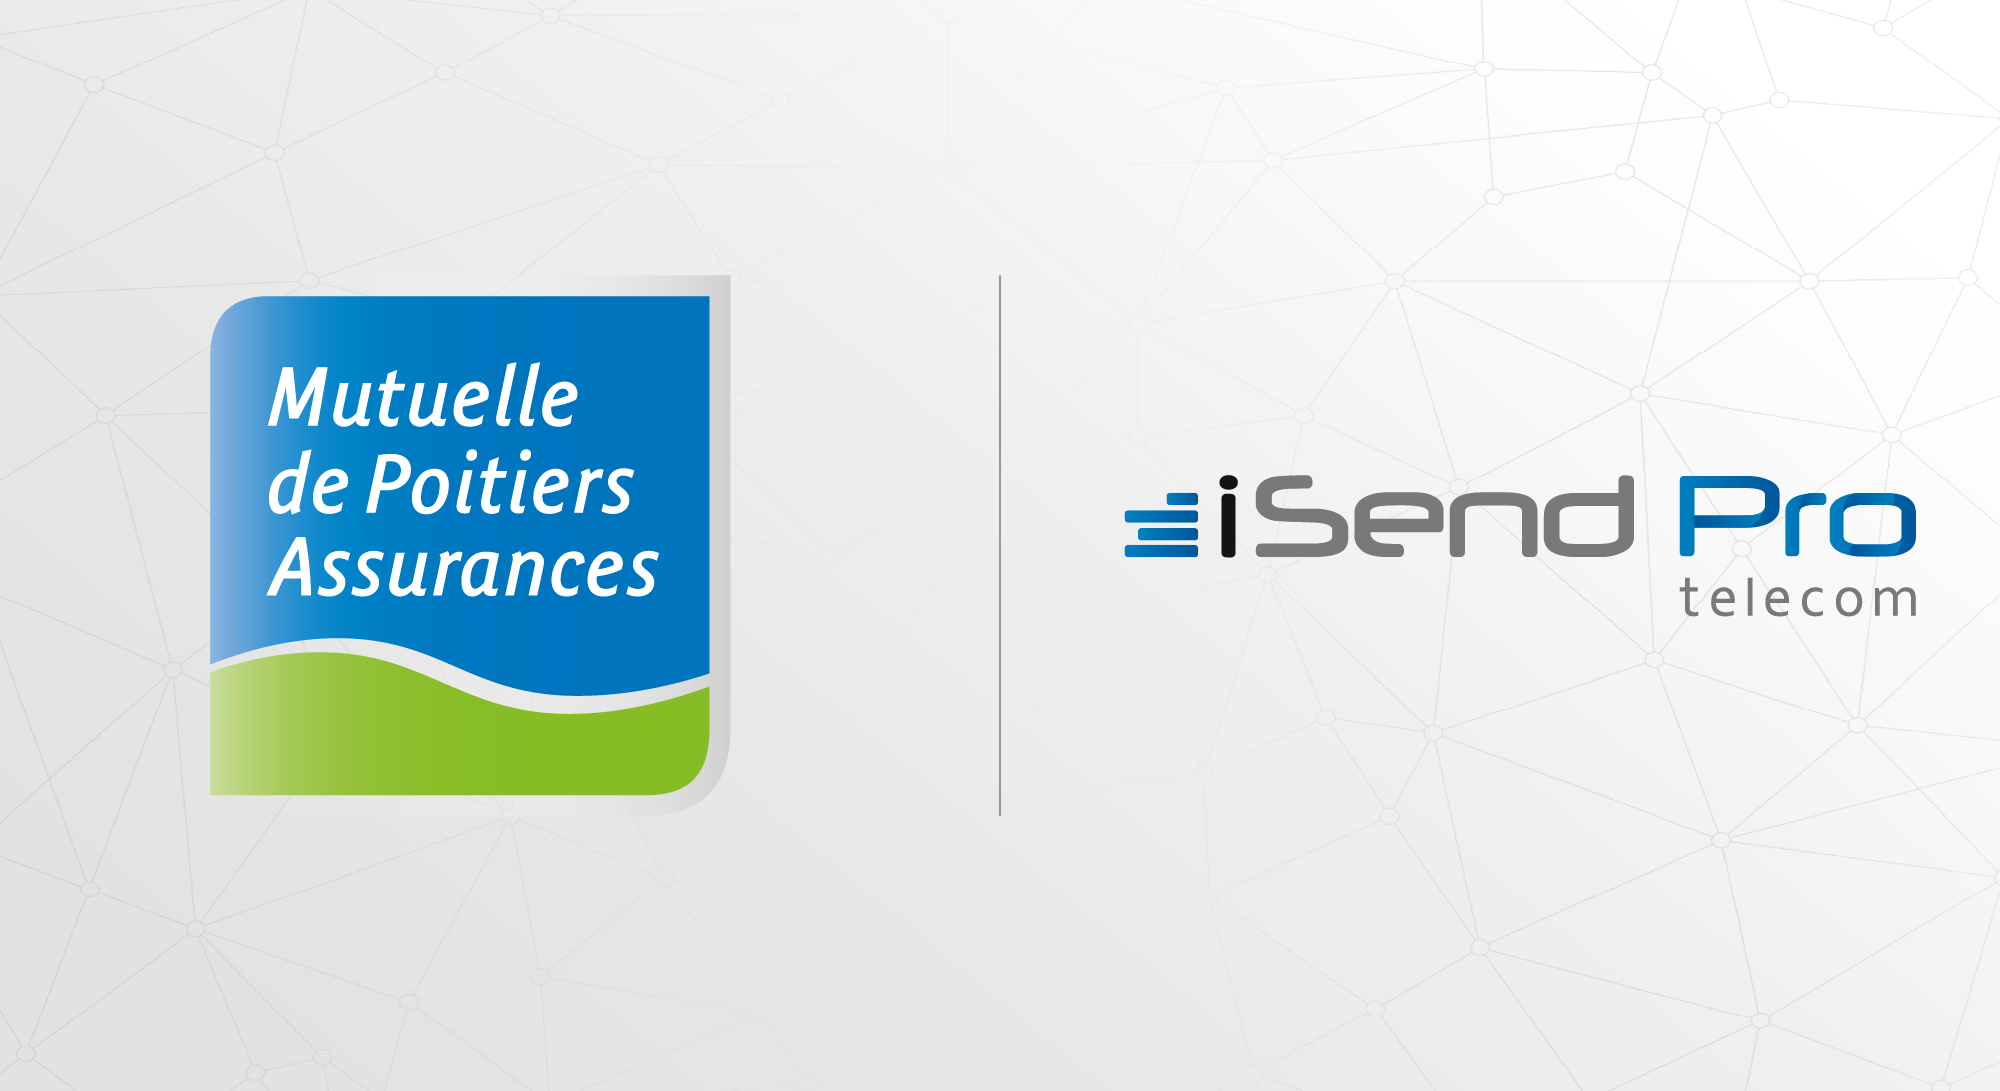 iSendPro Telecom met en place un partenariat avec la Mutuelle de Poitiers Assurances